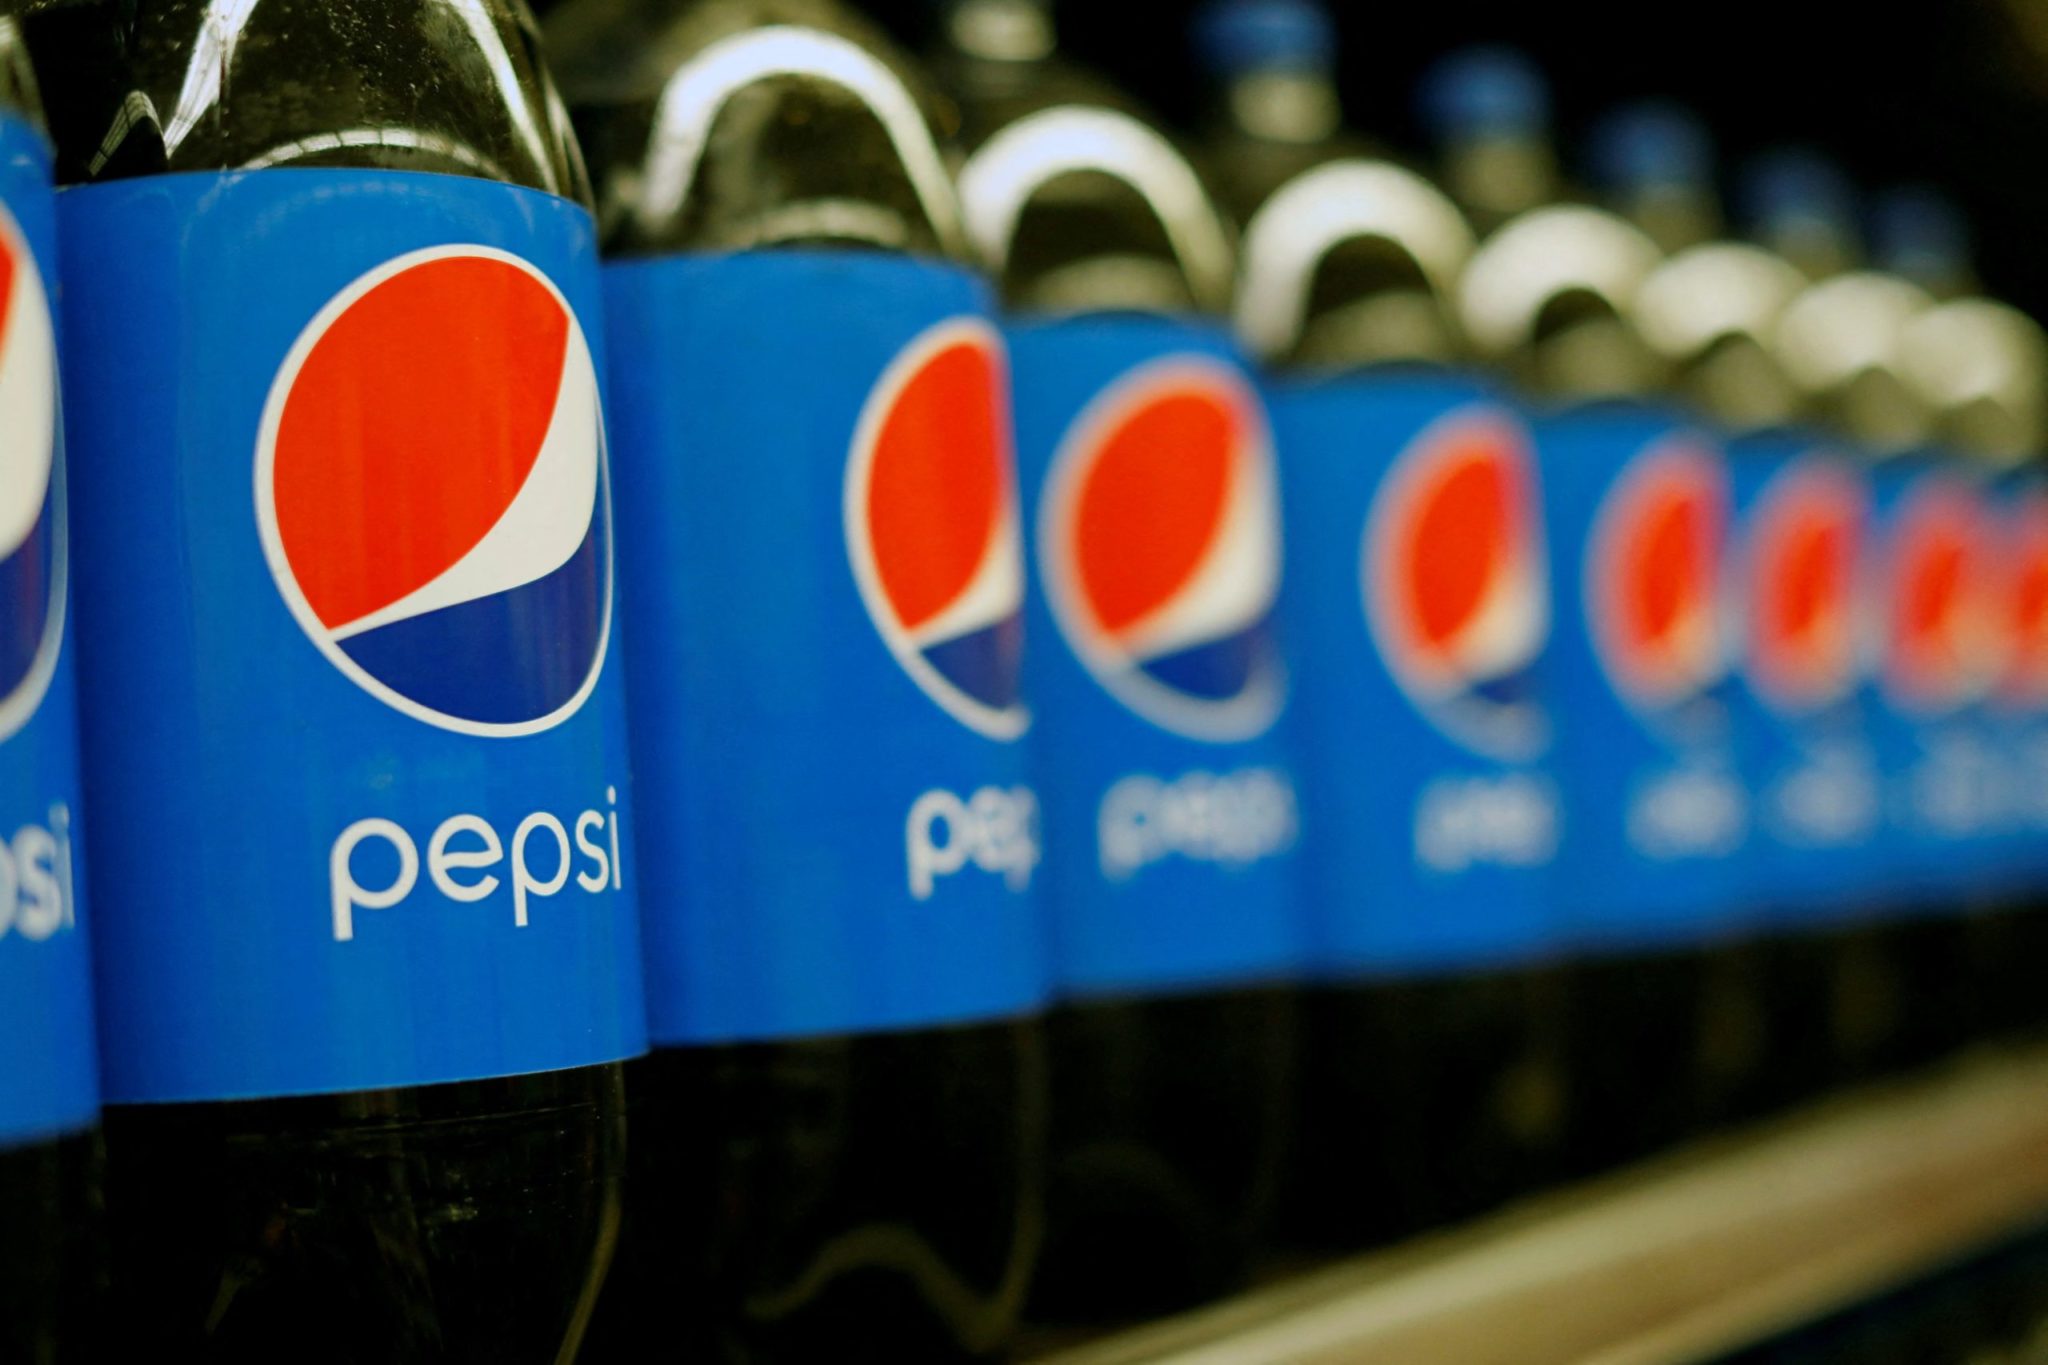 Garrafas de Pepsi expostas em uma loja em Pasadena, EUA